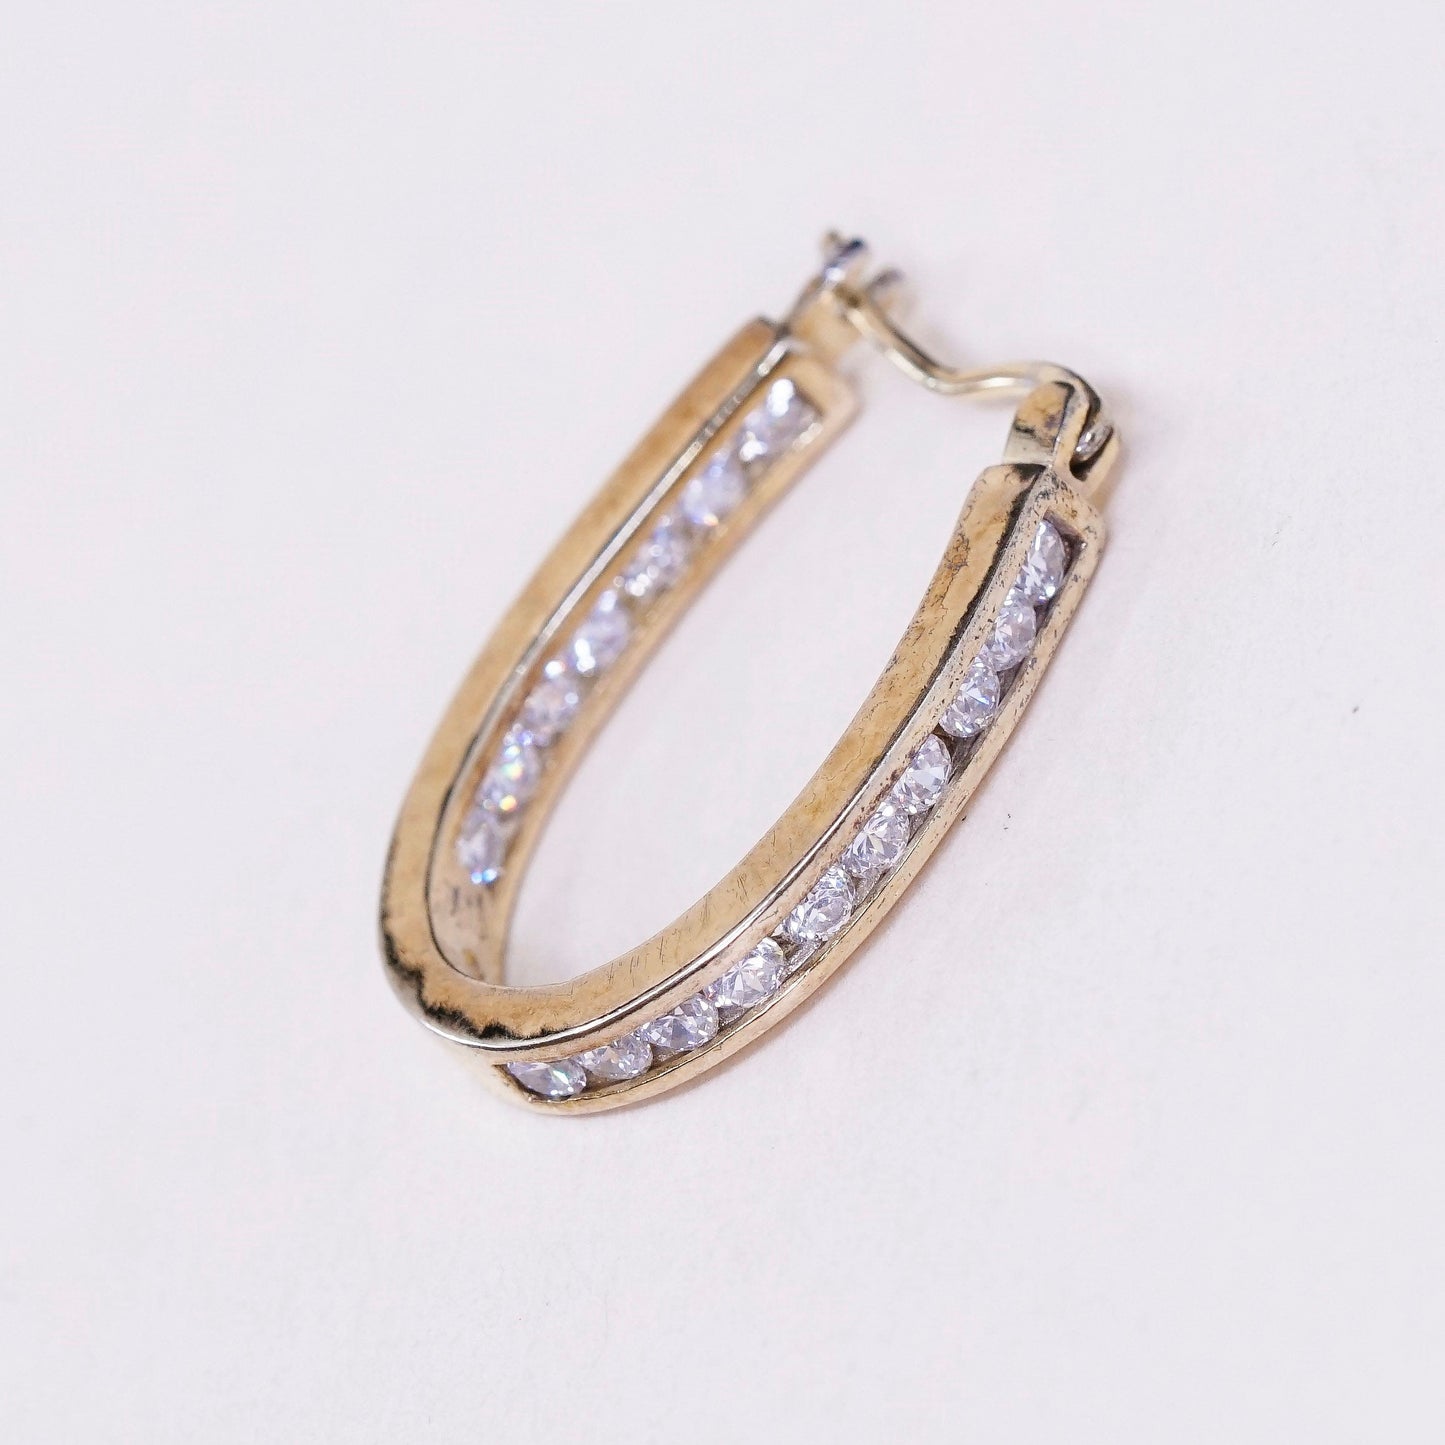 1”, Vintage vermeil gold sterling silver earrings, 925 hoops, huggie, with Cz